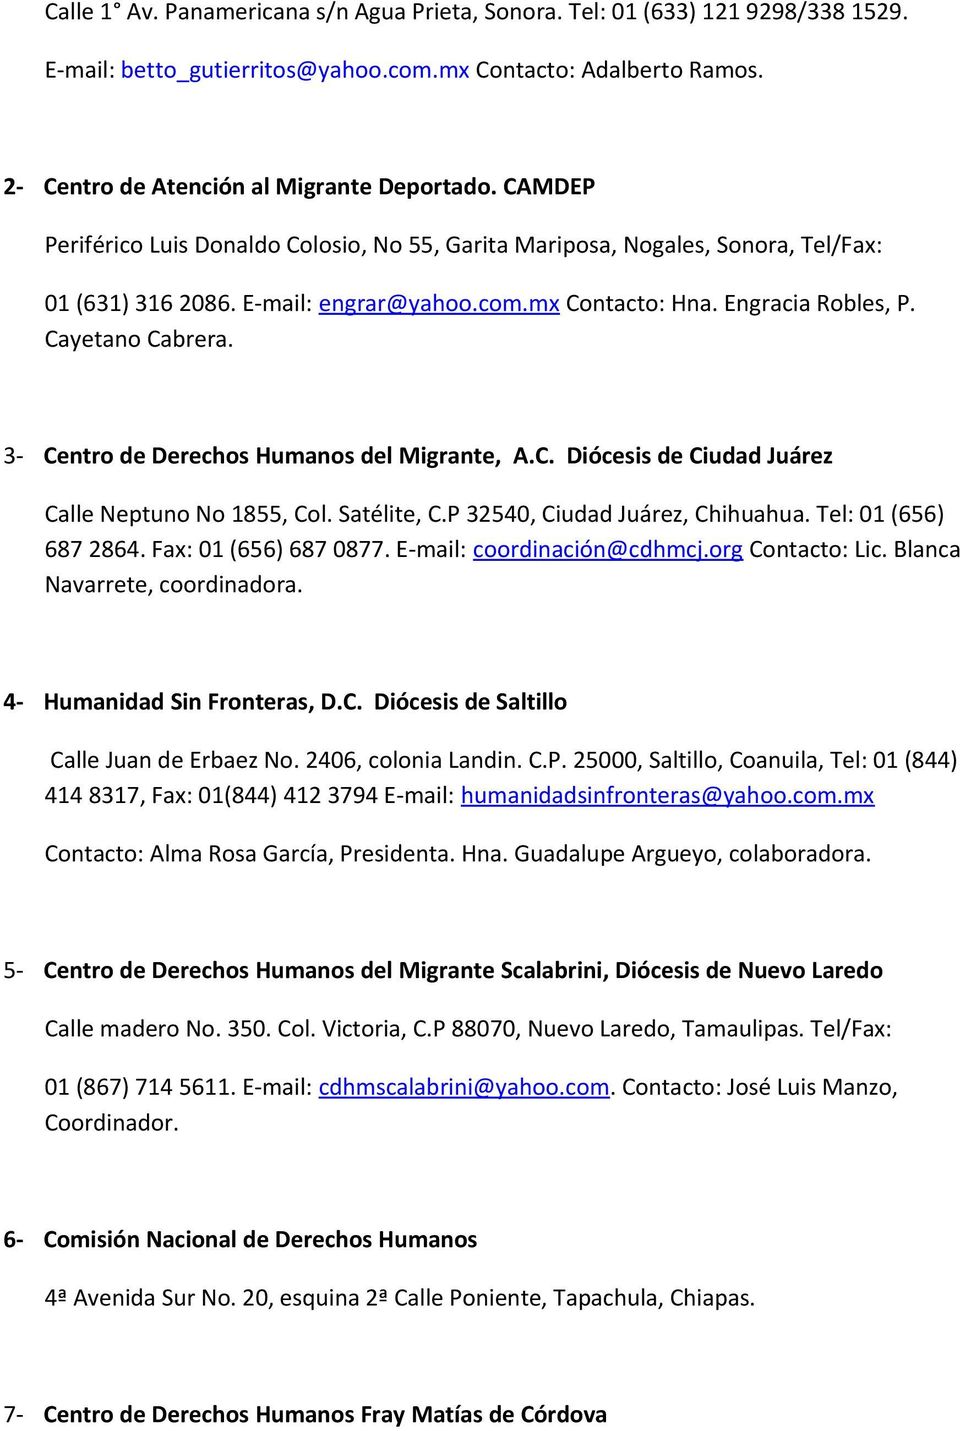 3- Centro de Derechos Humanos del Migrante, A.C. Diócesis de Ciudad Juárez Calle Neptuno No 1855, Col. Satélite, C.P 32540, Ciudad Juárez, Chihuahua. Tel: 01 (656) 687 2864. Fax: 01 (656) 687 0877.